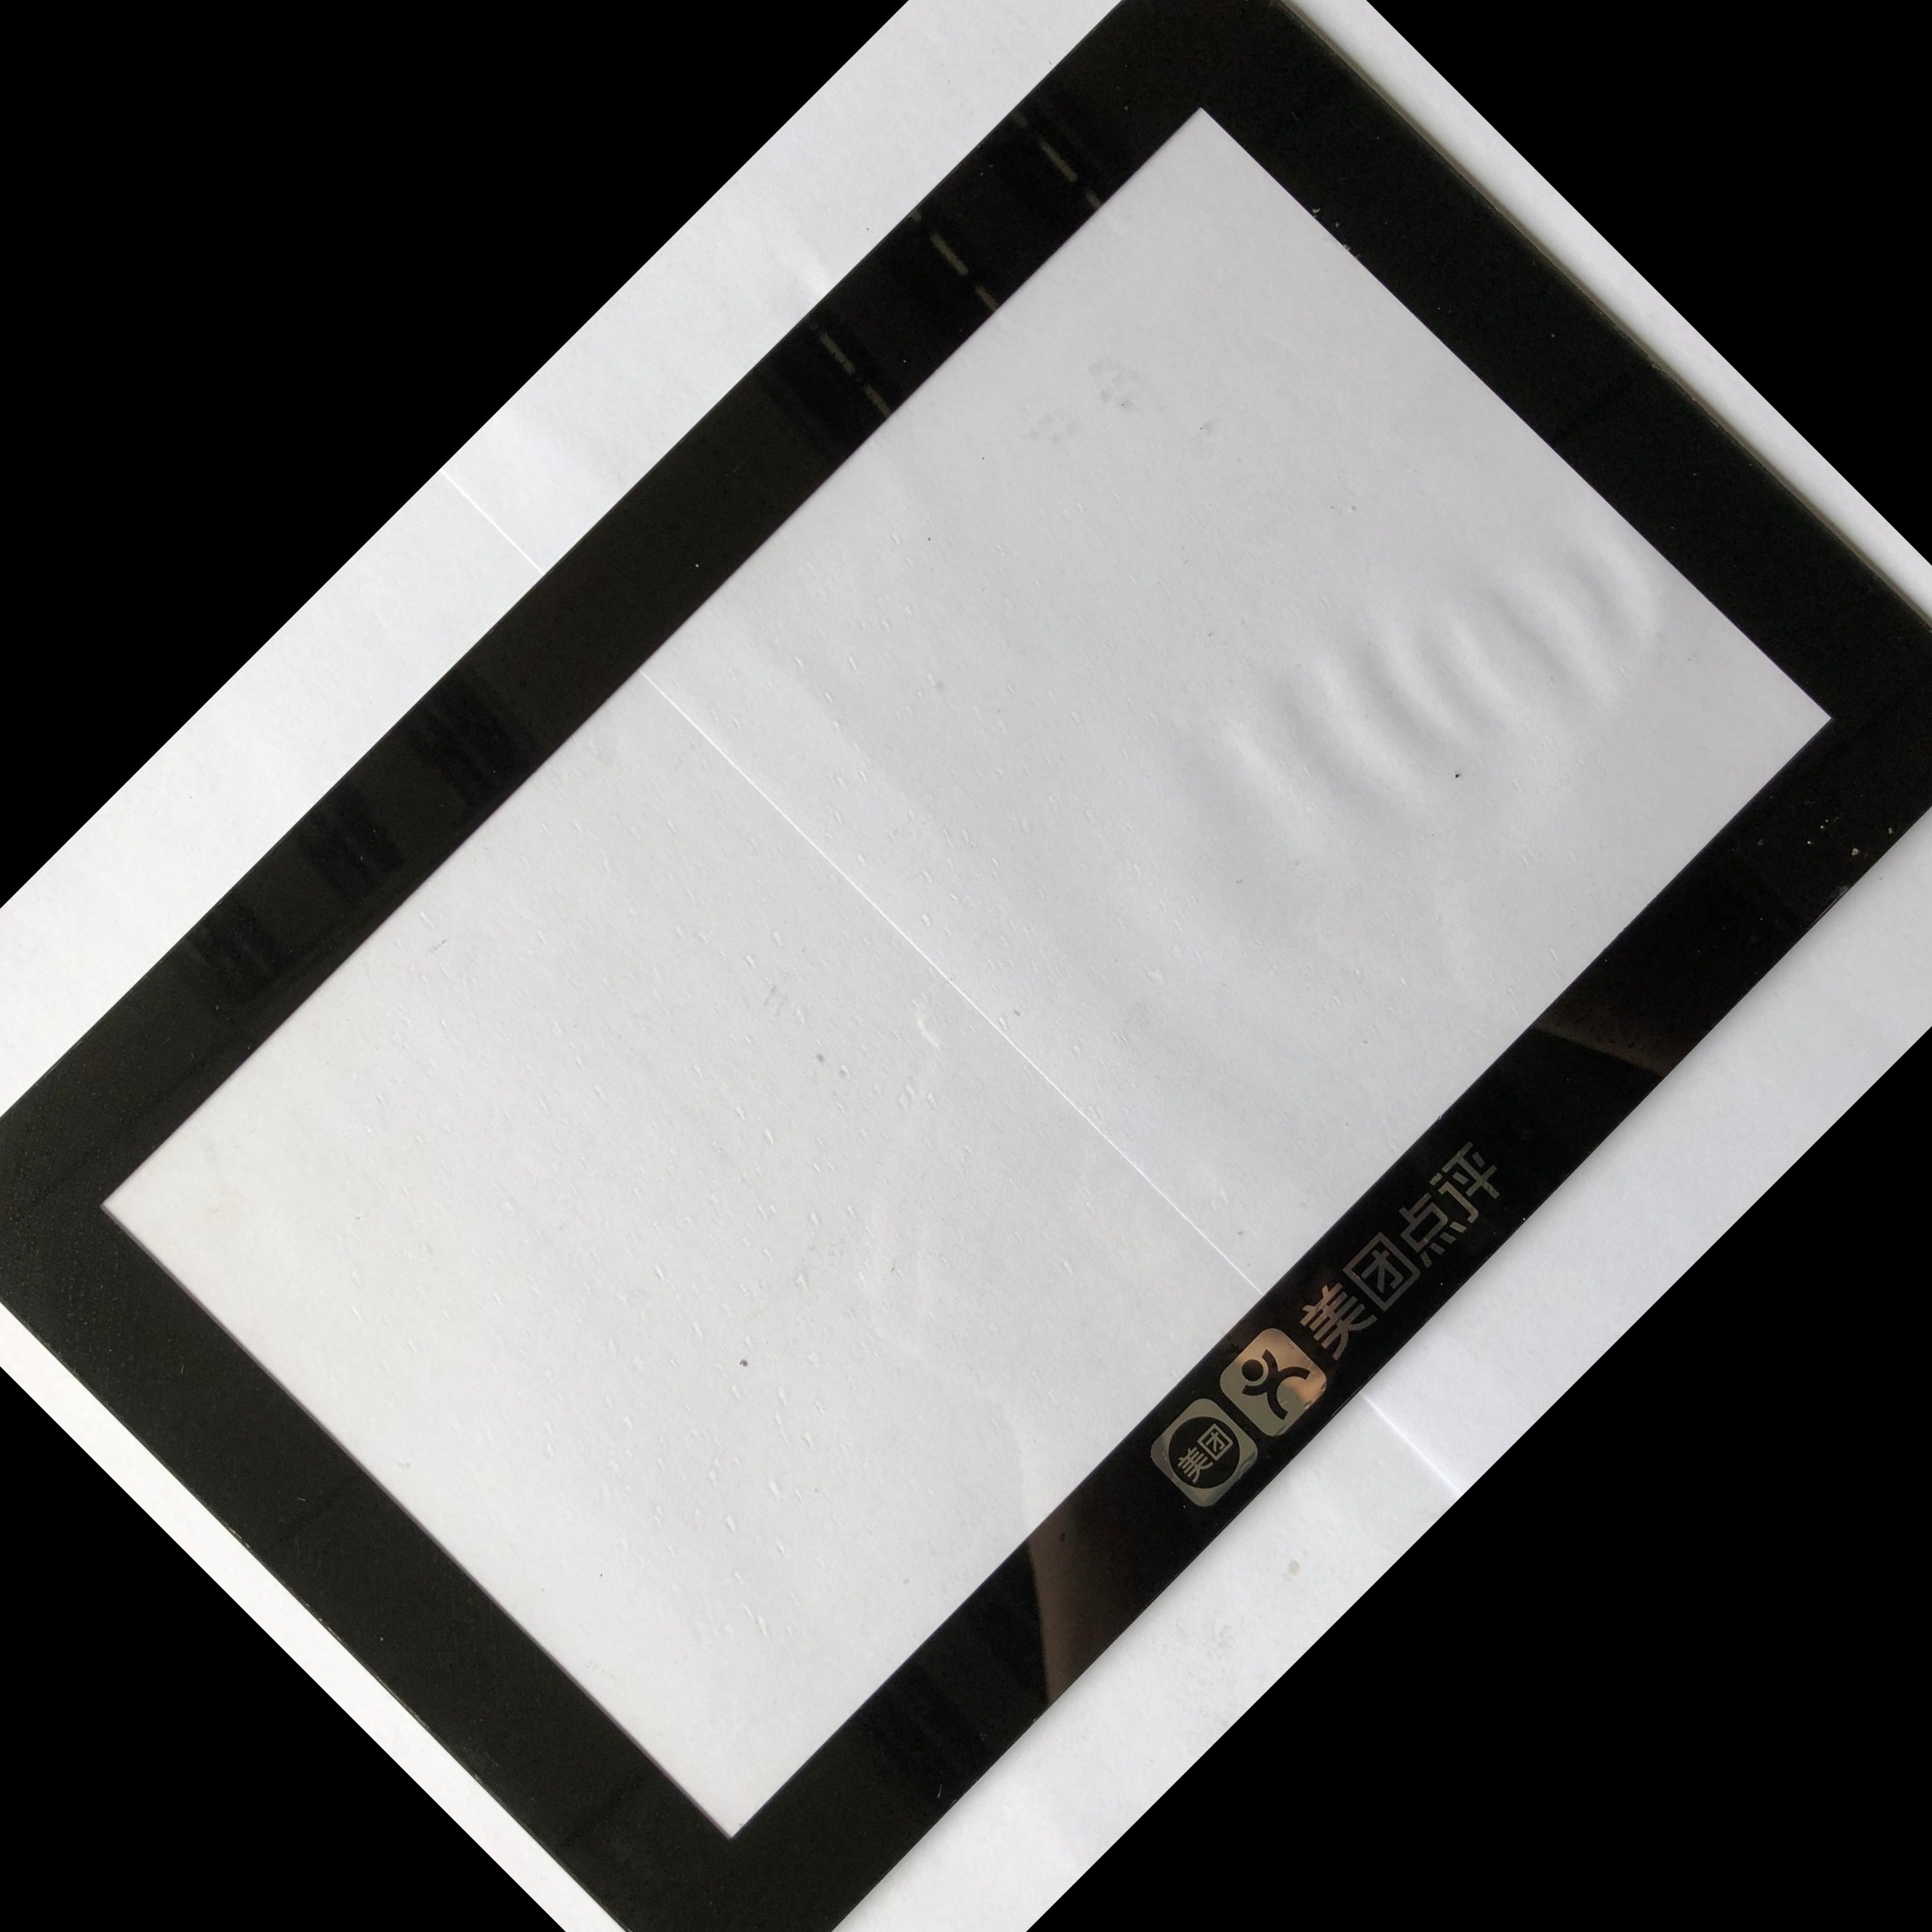 厂家定制PMMA 亚克力镜片 PC面板 镜片 电子产品视窗显示面板 触摸屏面板镜片 亚克力面板生产厂家 2.5D